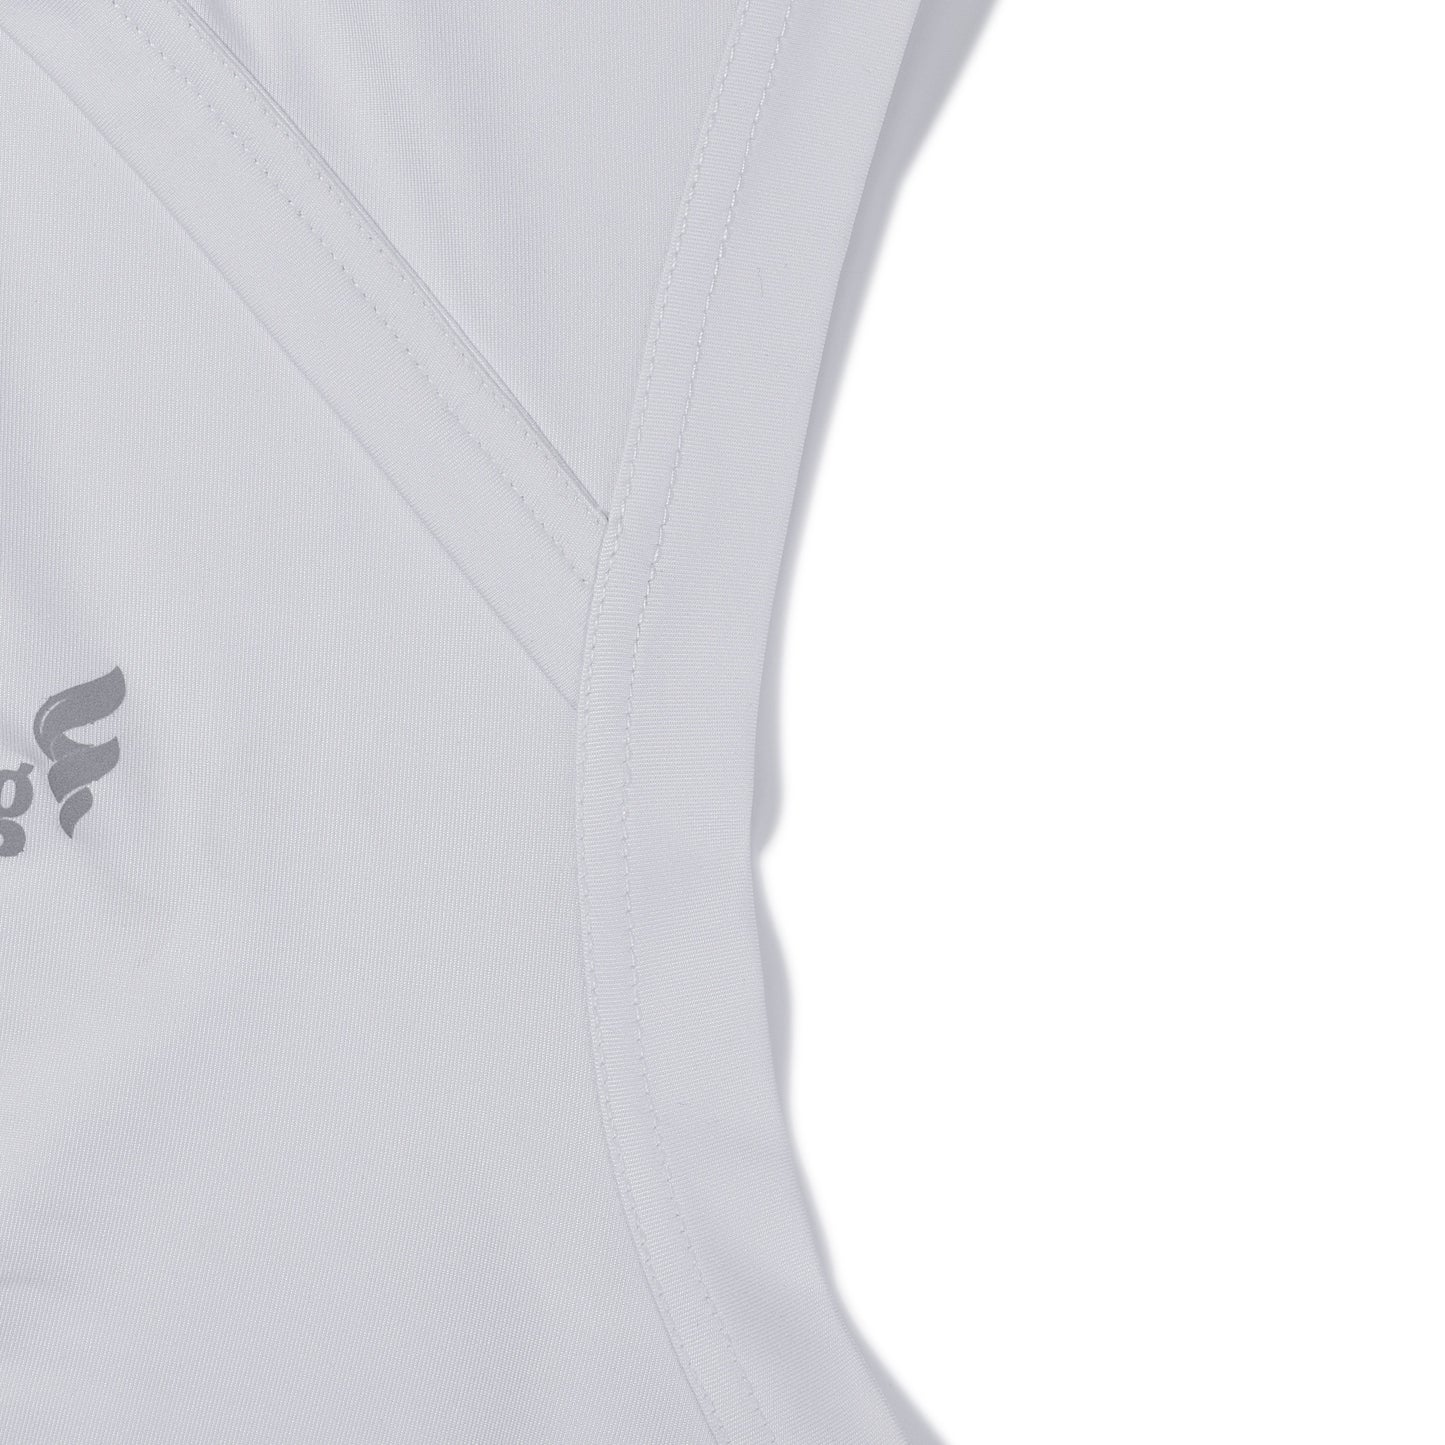 Sport Sleeveless Shirt Men(White/Black/Grey) - Soulsfeng